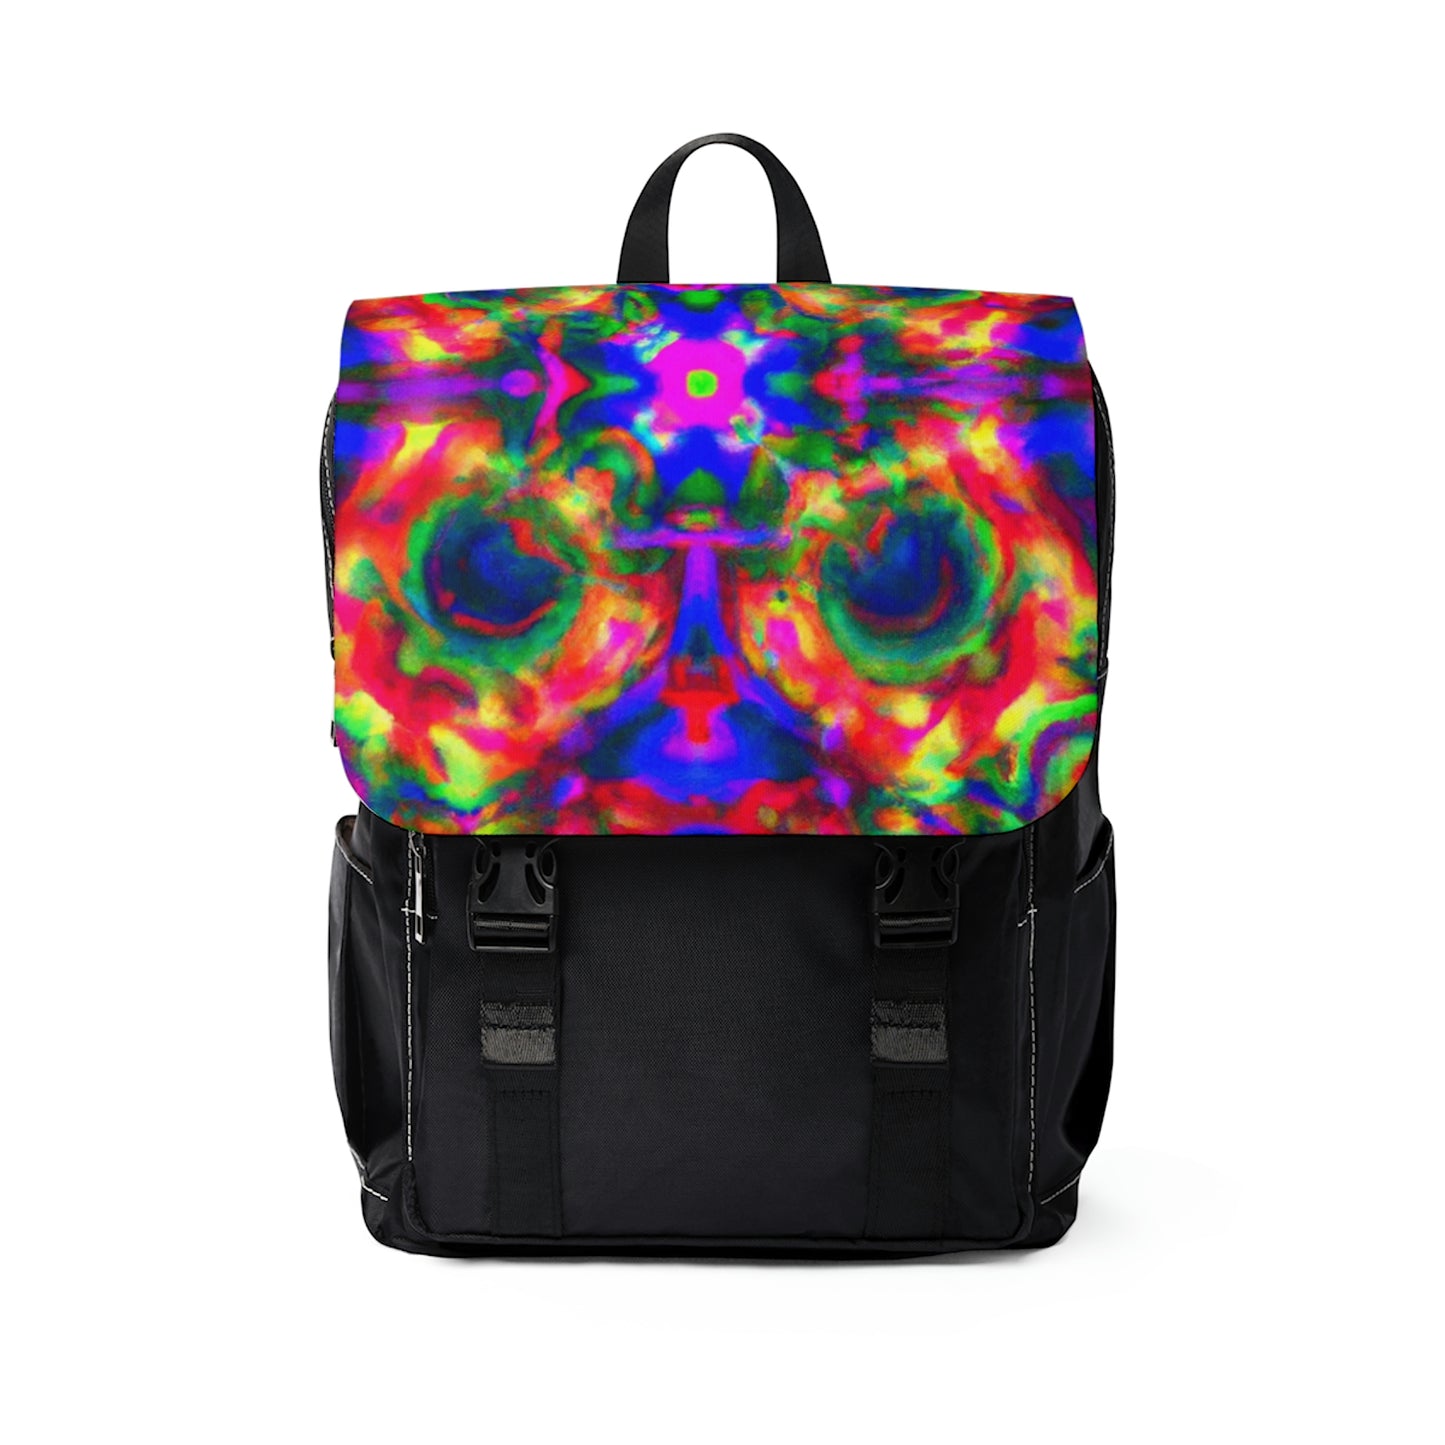 DeVoisé - Psychedelic Shoulder Travel Backpack Bag